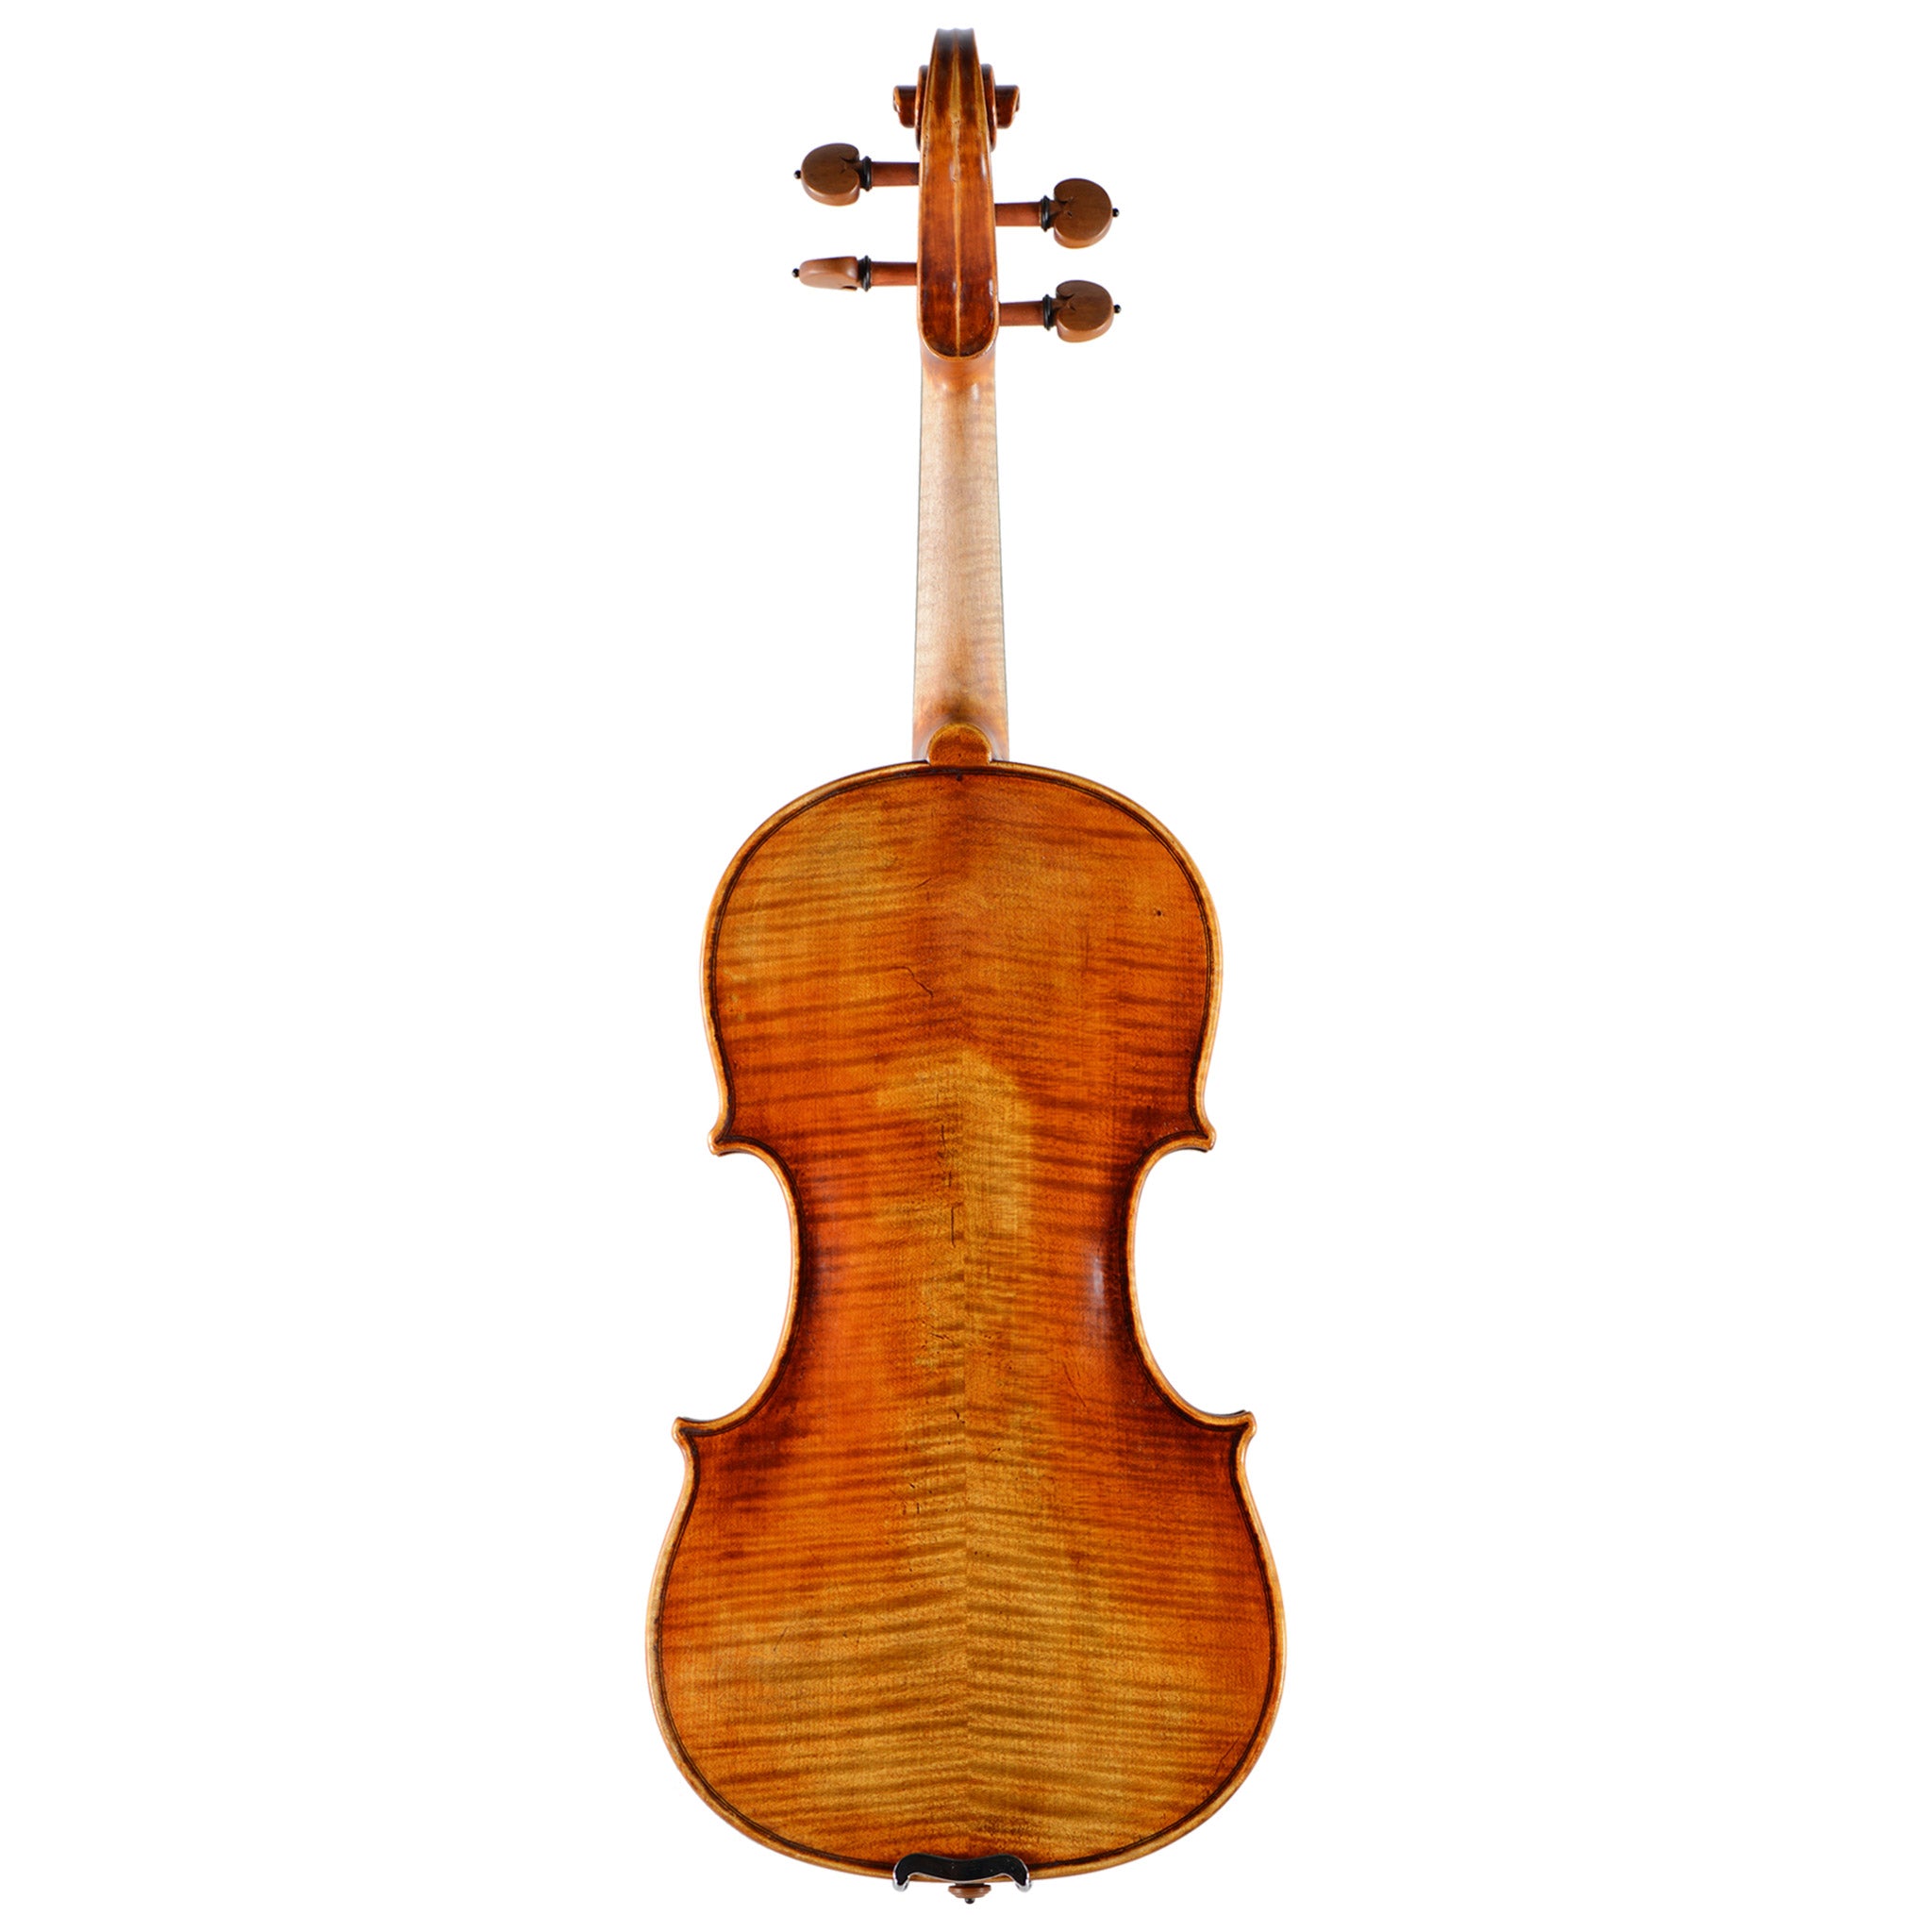 Holstein Premium Bench Kreisler Violin